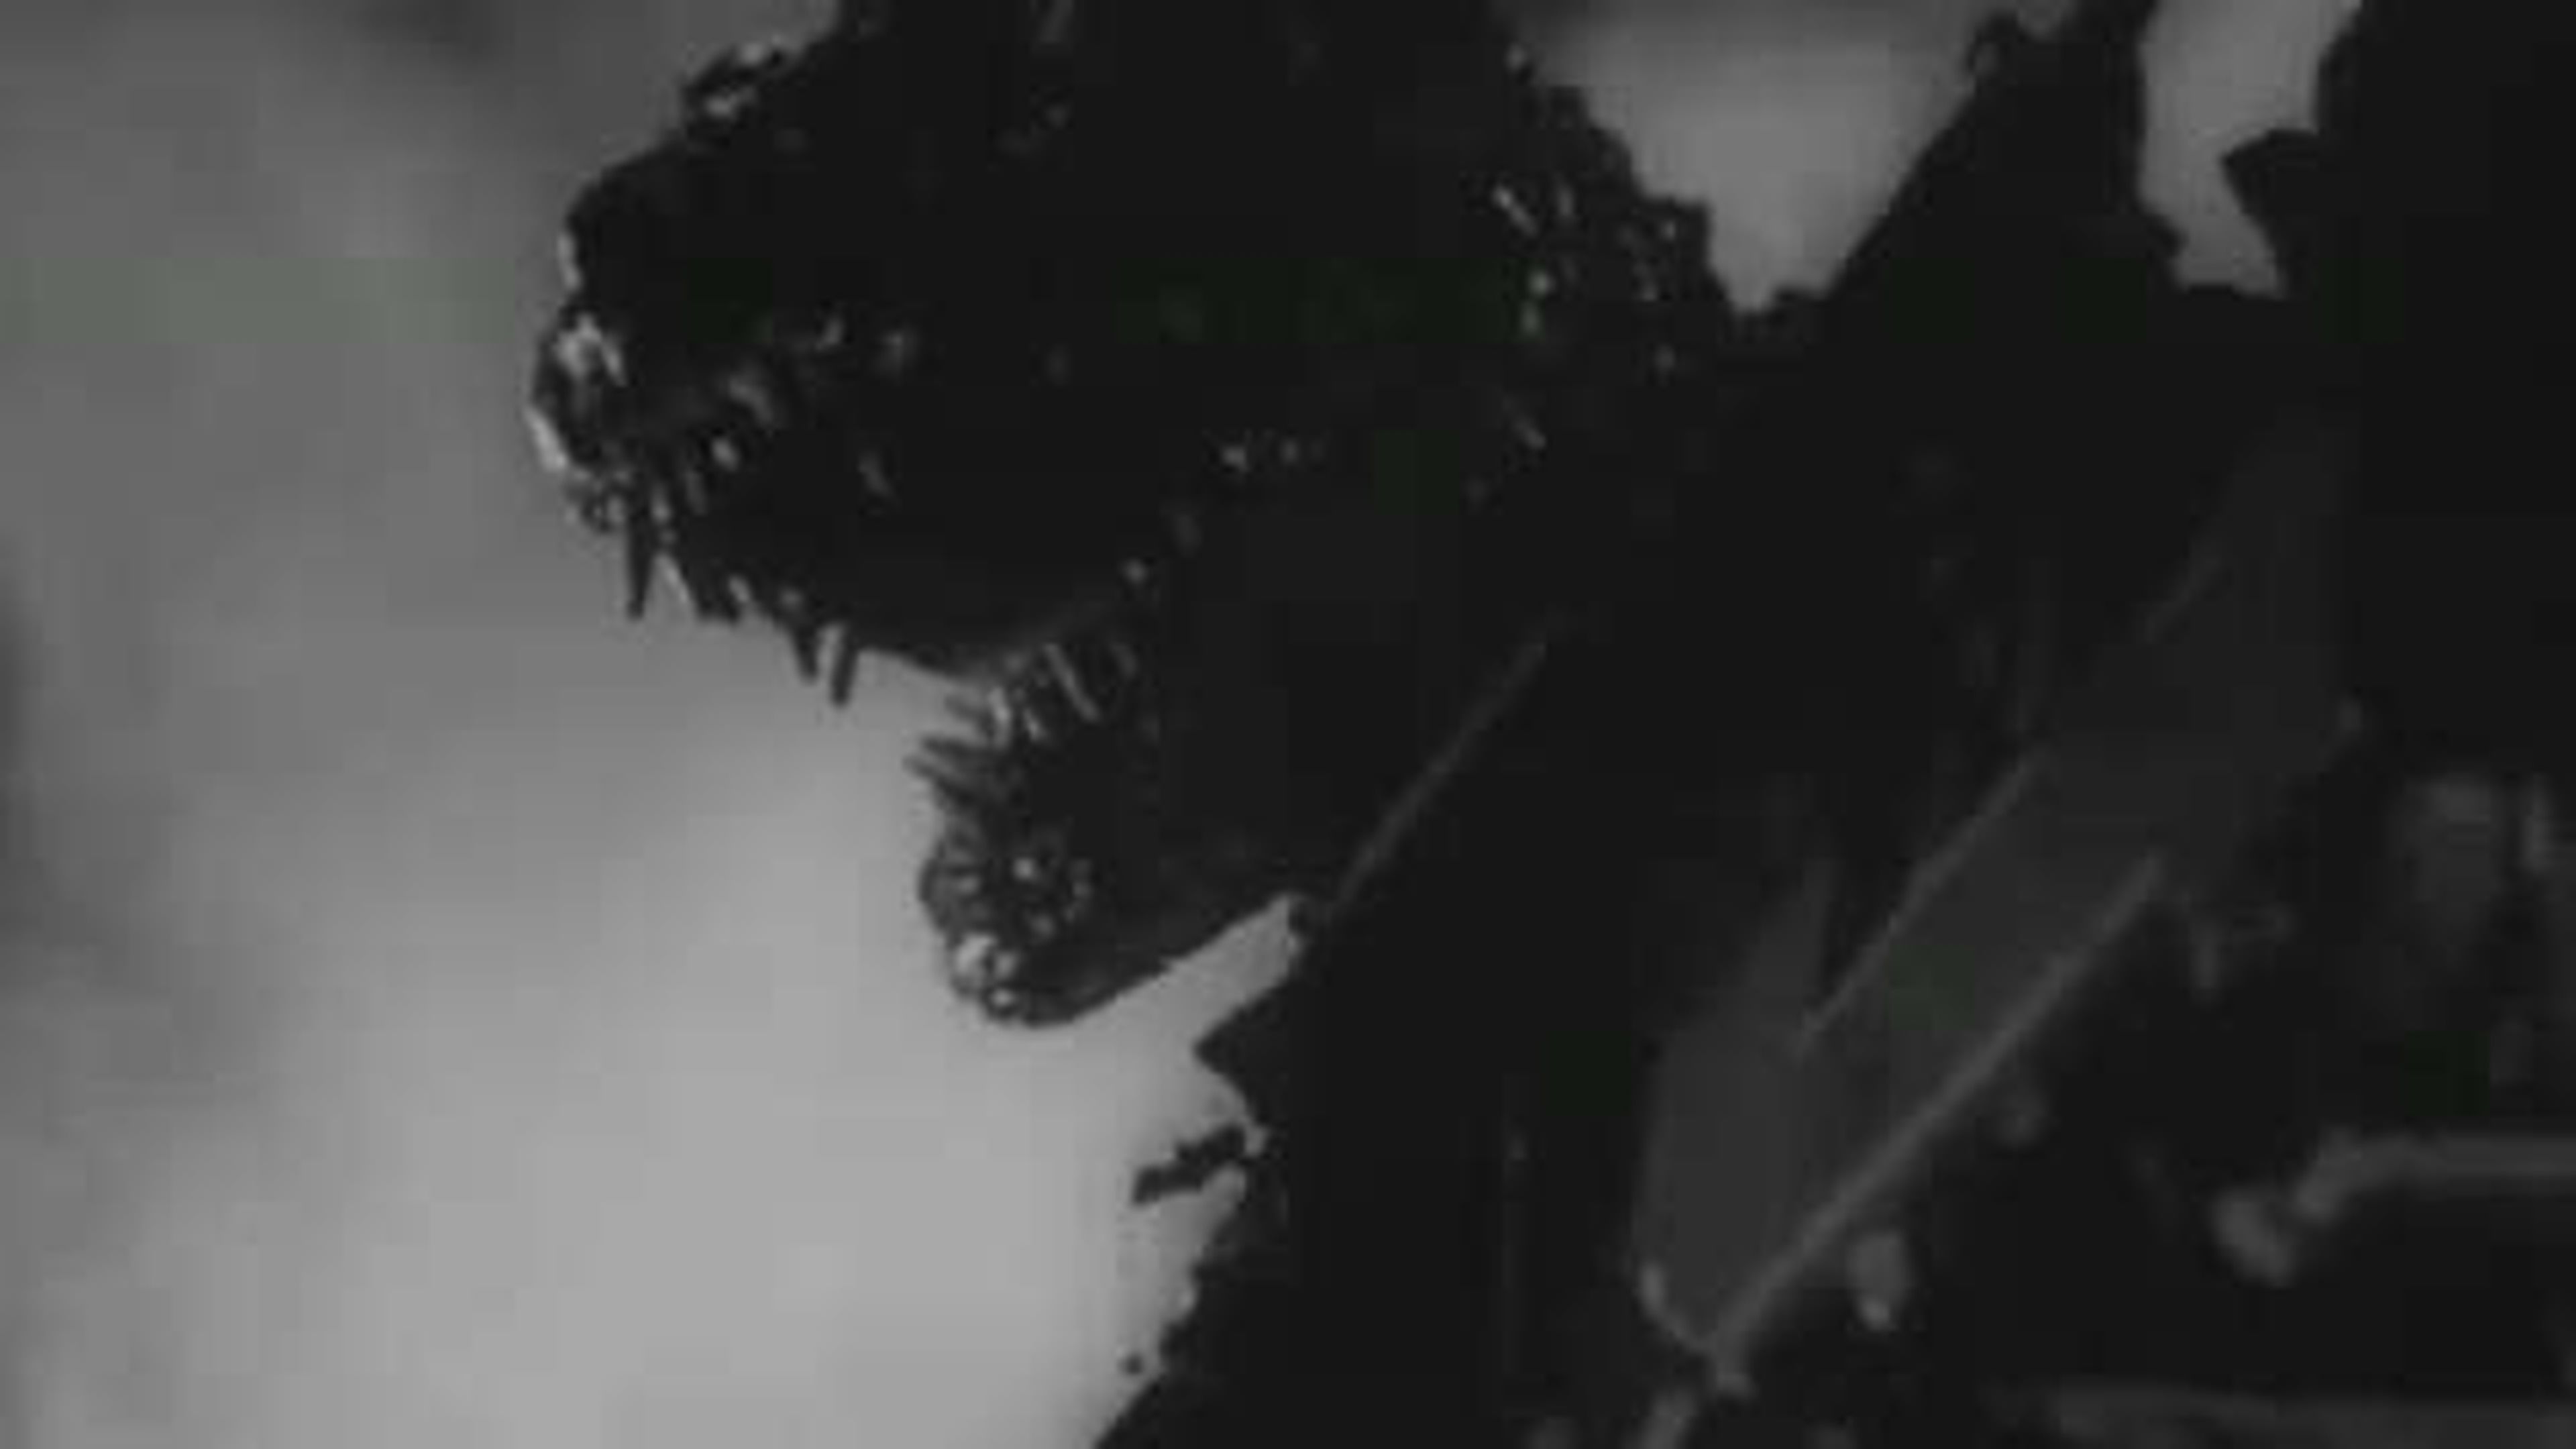 Godzilla 2014 Trailer With 1954 Gojira Footage